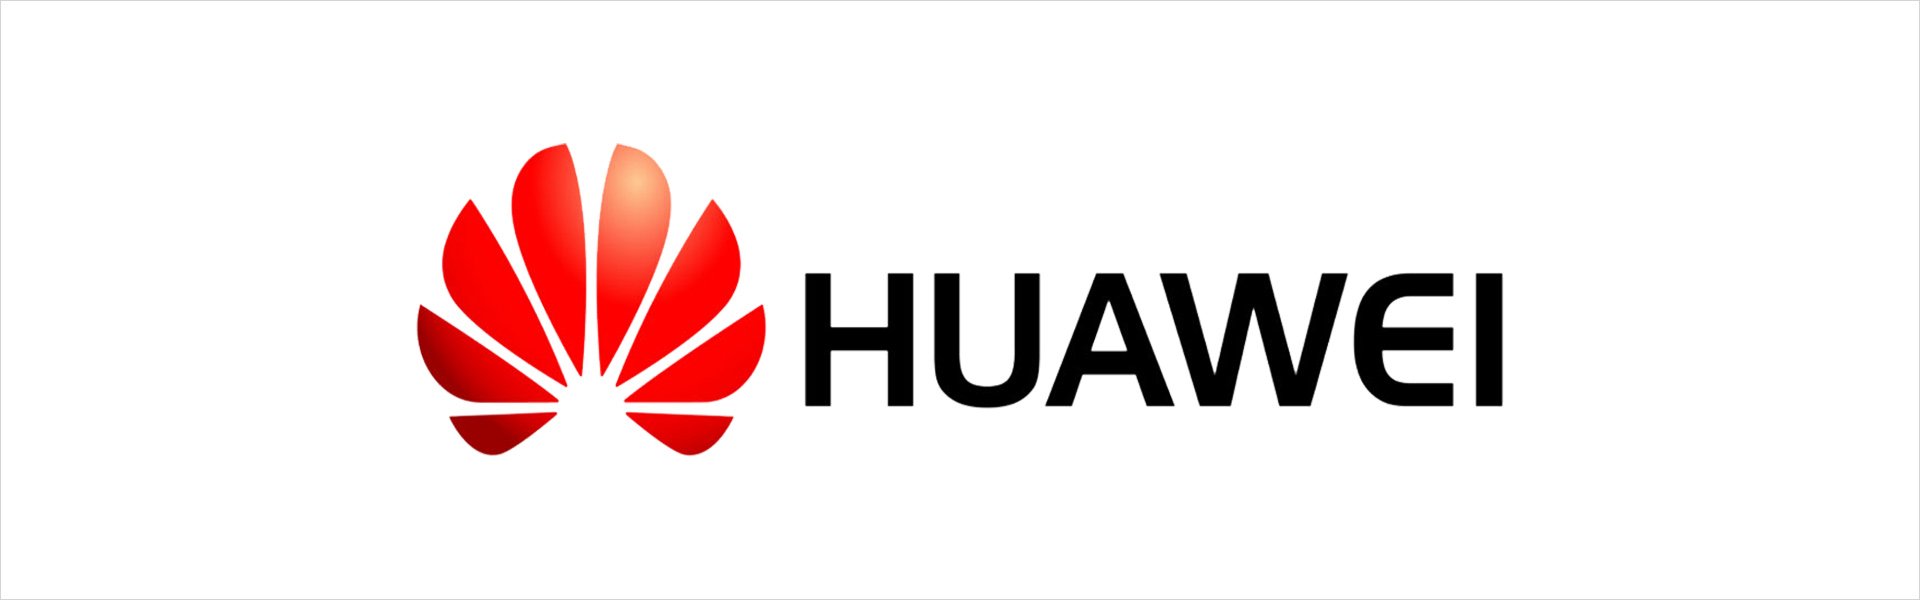 HuaweiI Mini CM510 Huawei